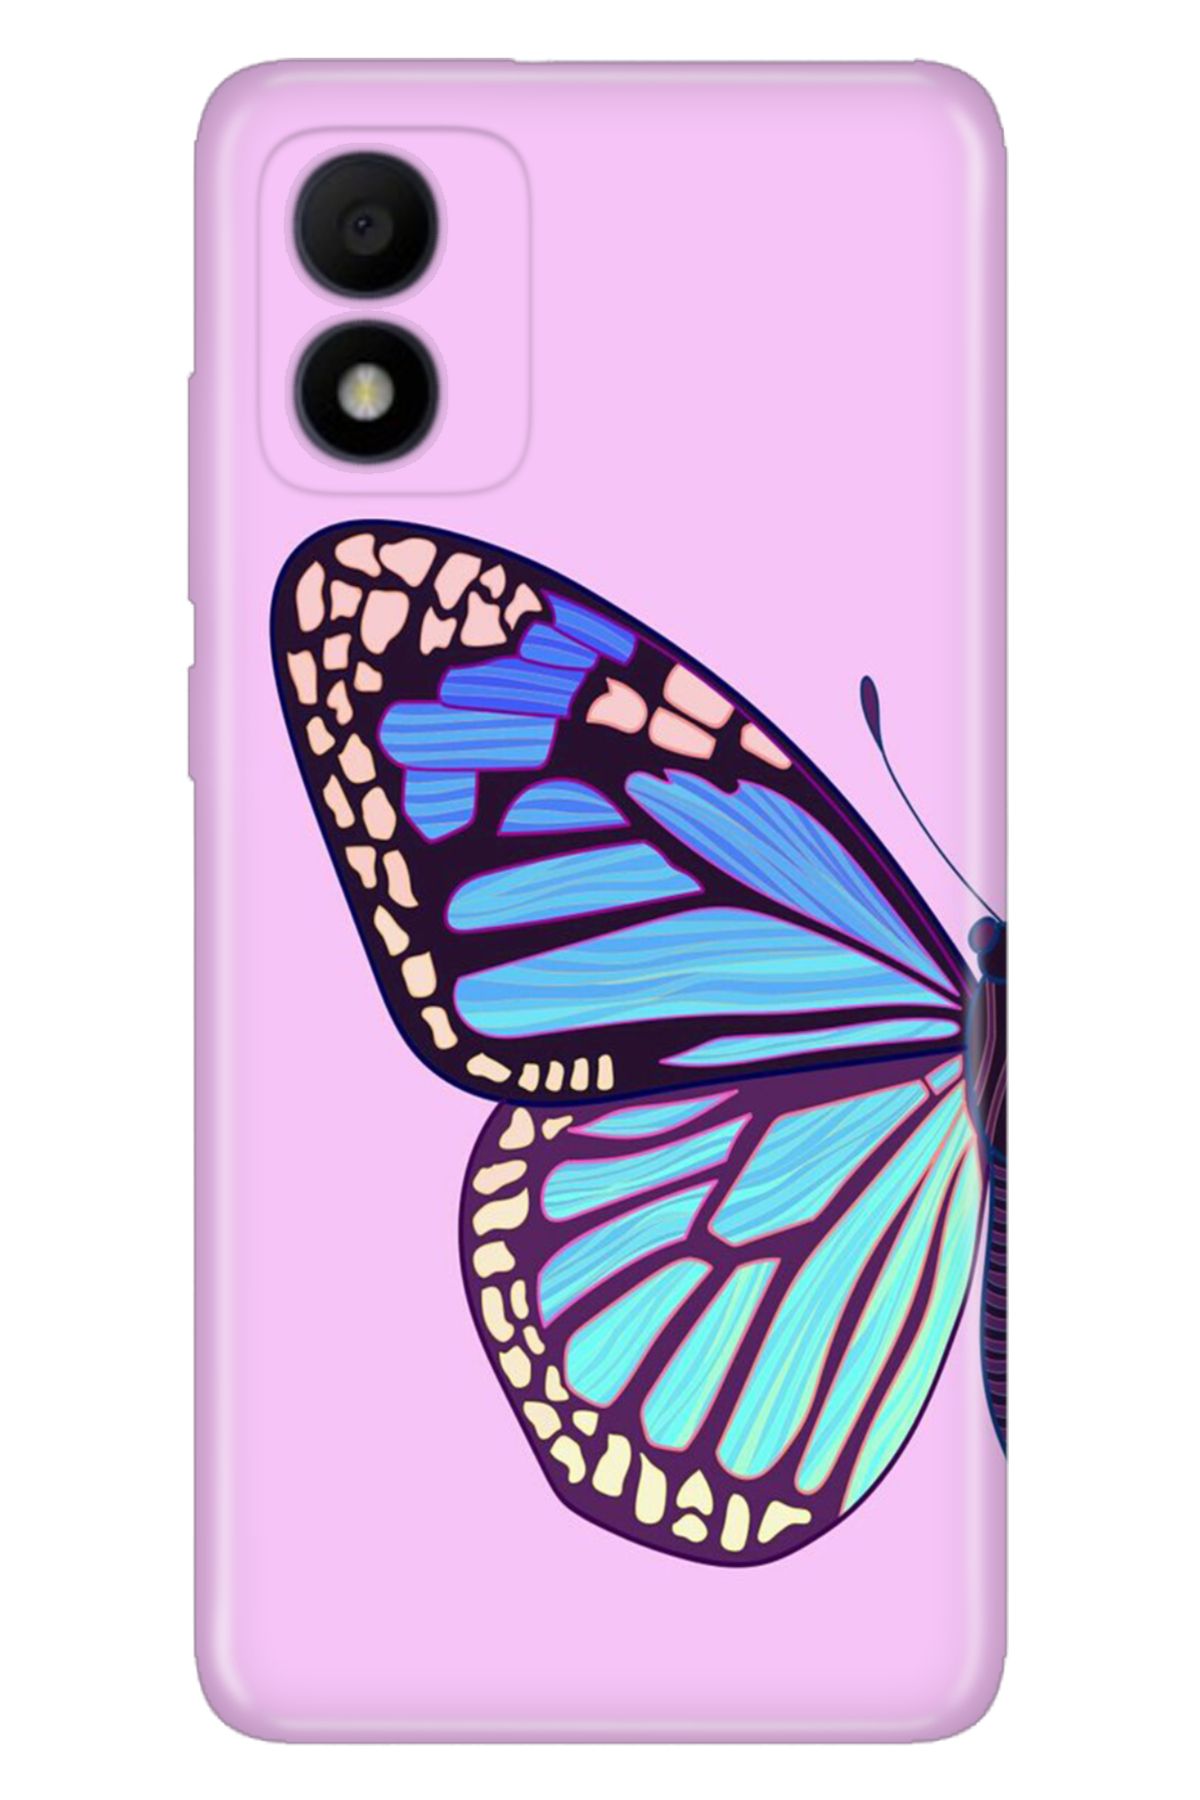 TCL 303 Uyumlu Kılıf Resimli Desenli Silikon Butterfly